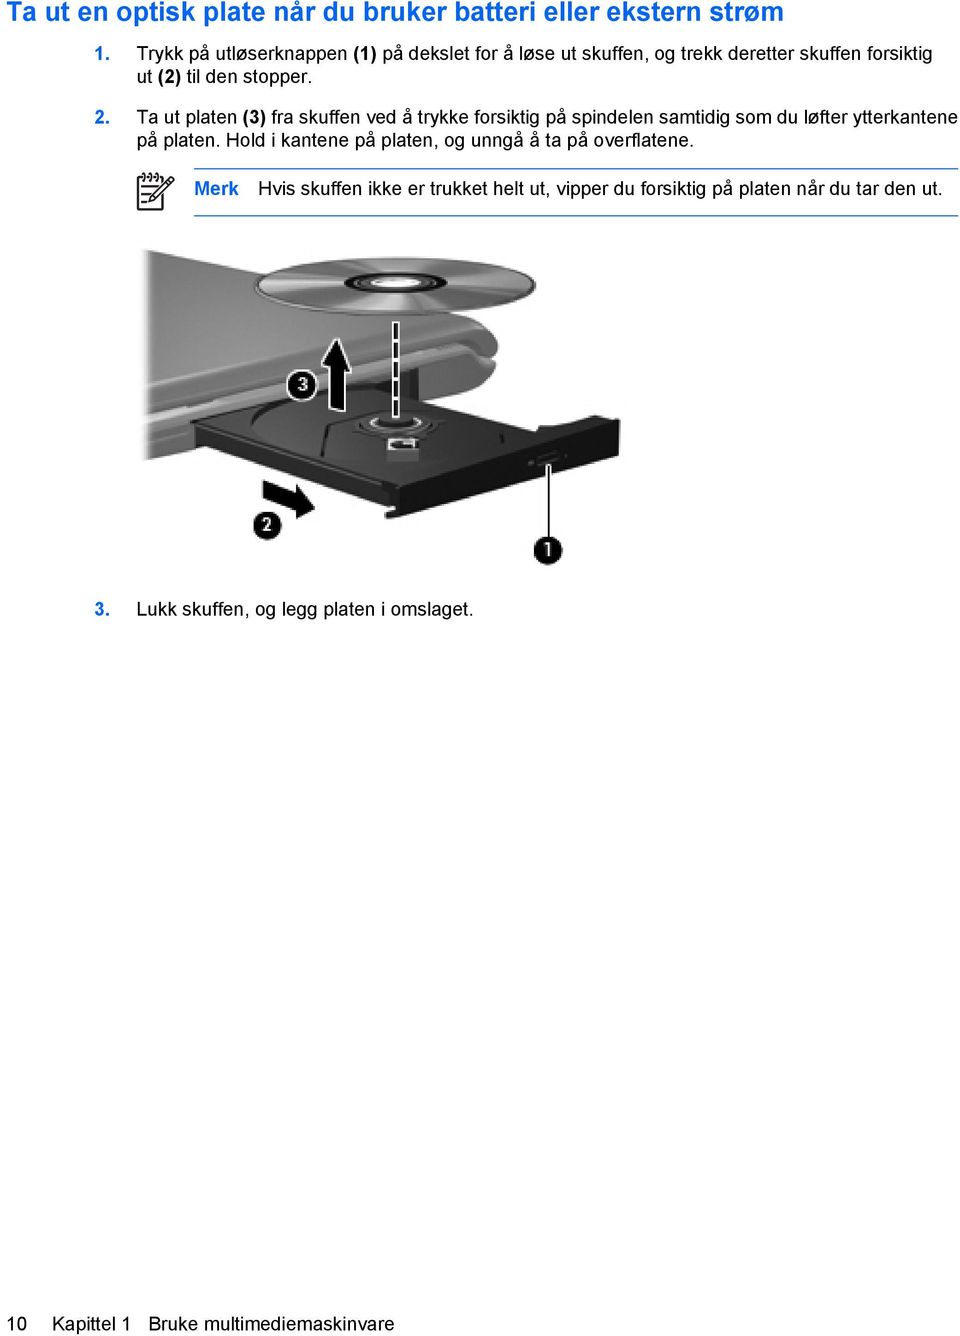 Ta ut platen (3) fra skuffen ved å trykke forsiktig på spindelen samtidig som du løfter ytterkantene på platen.